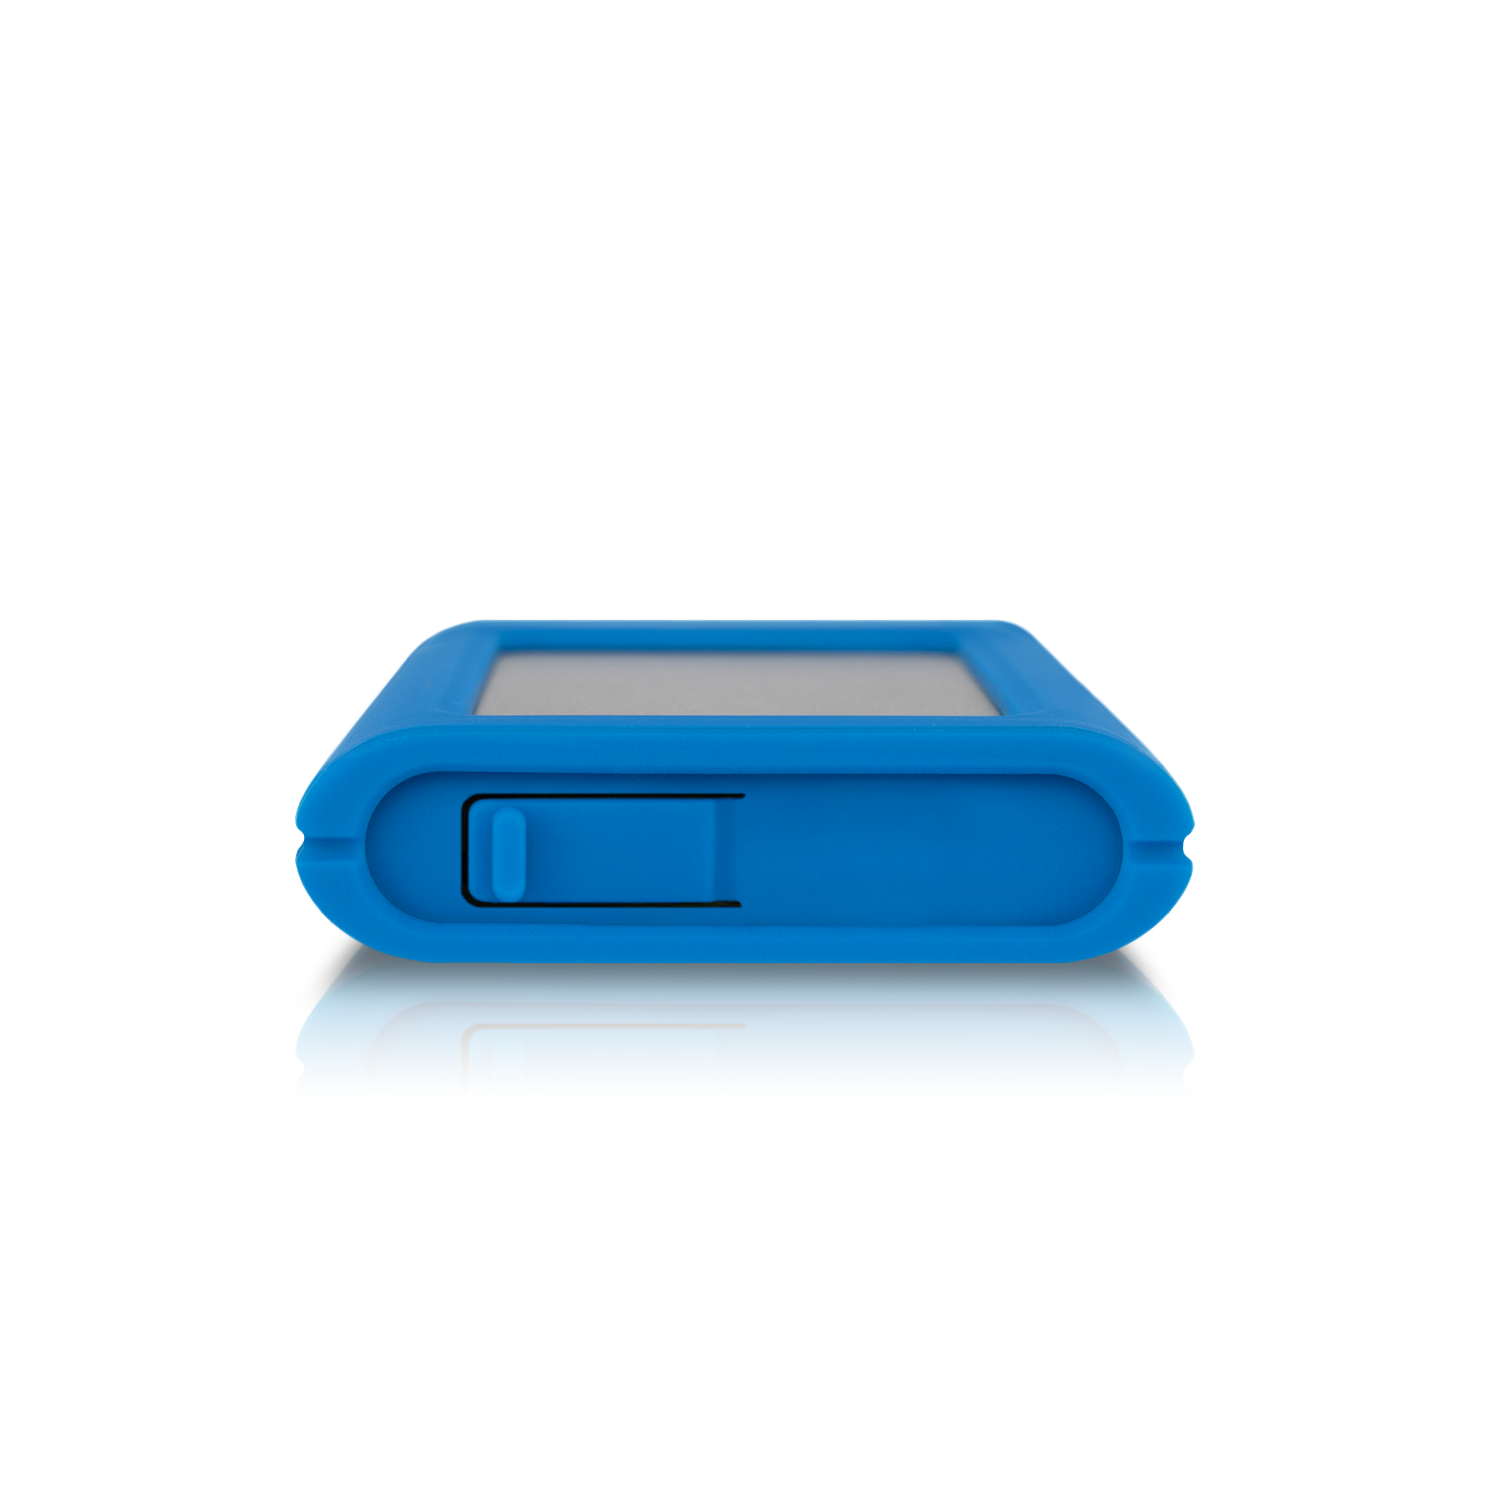 Tuff nano Plus USB-C Portable External SSD - 2TB – CalDigit US